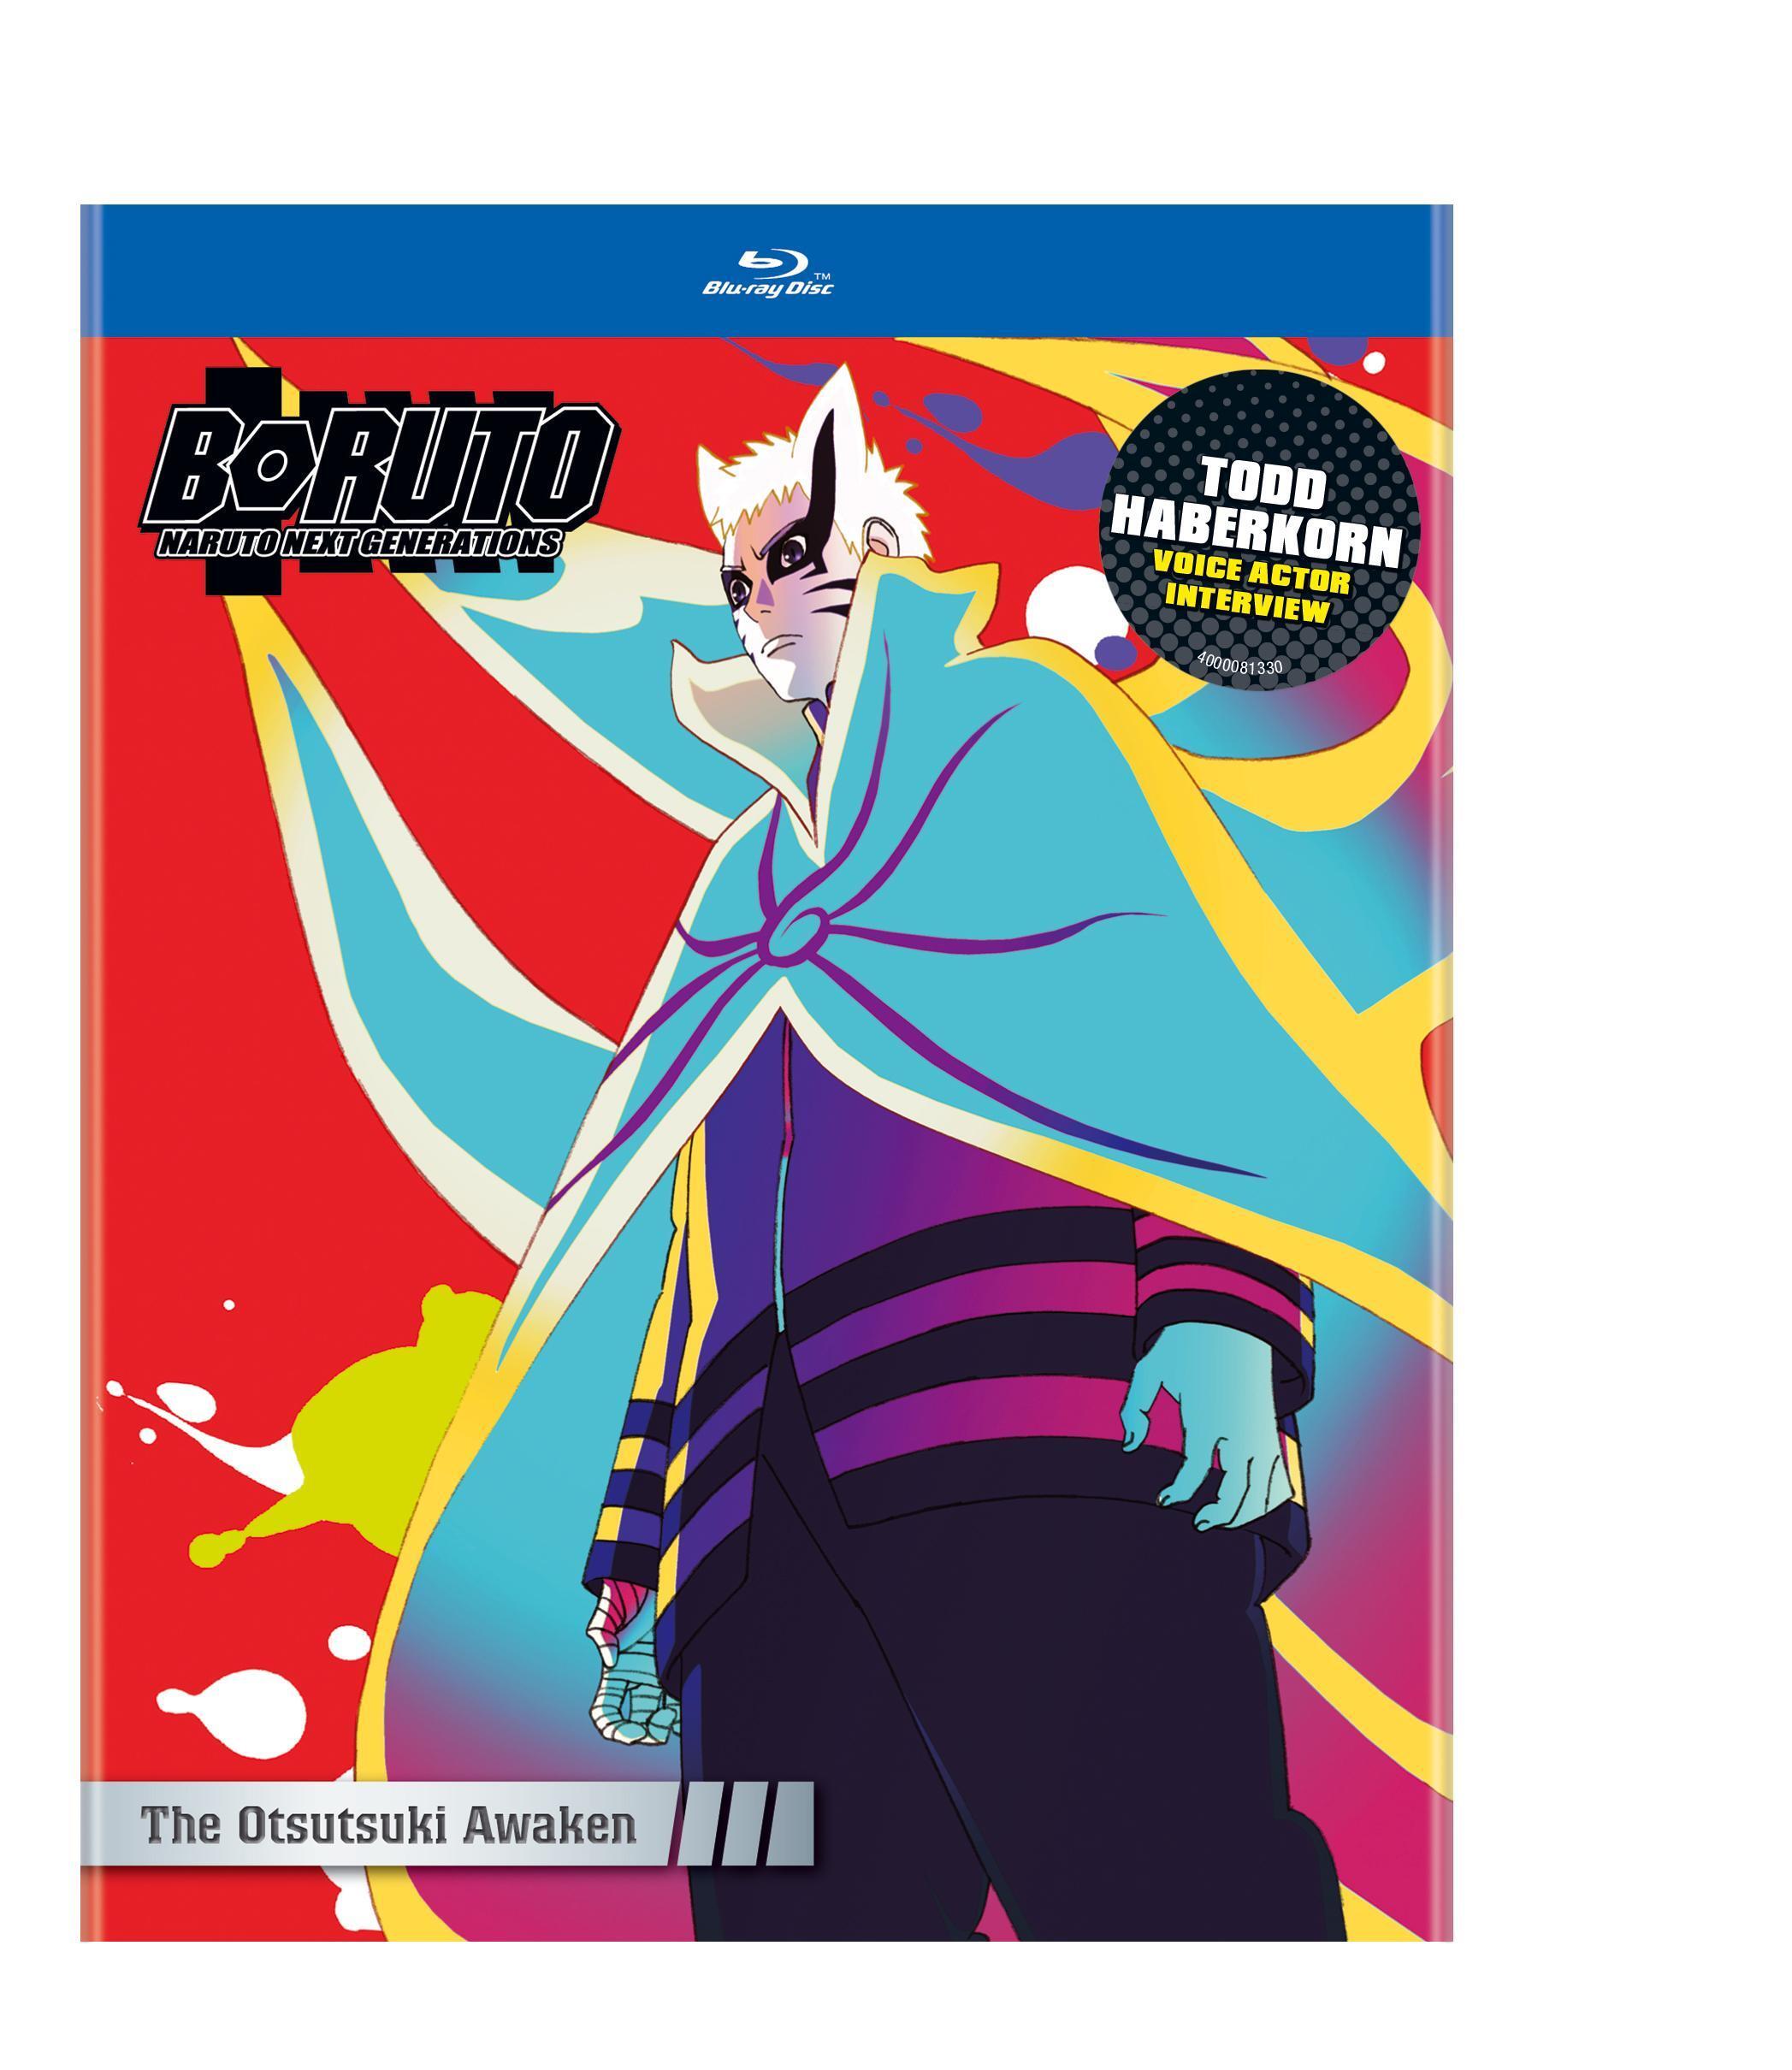 DVD & Blu-ray: BORUTO - NARUTO NEXT GENERATIONS Set 10 (Boruto